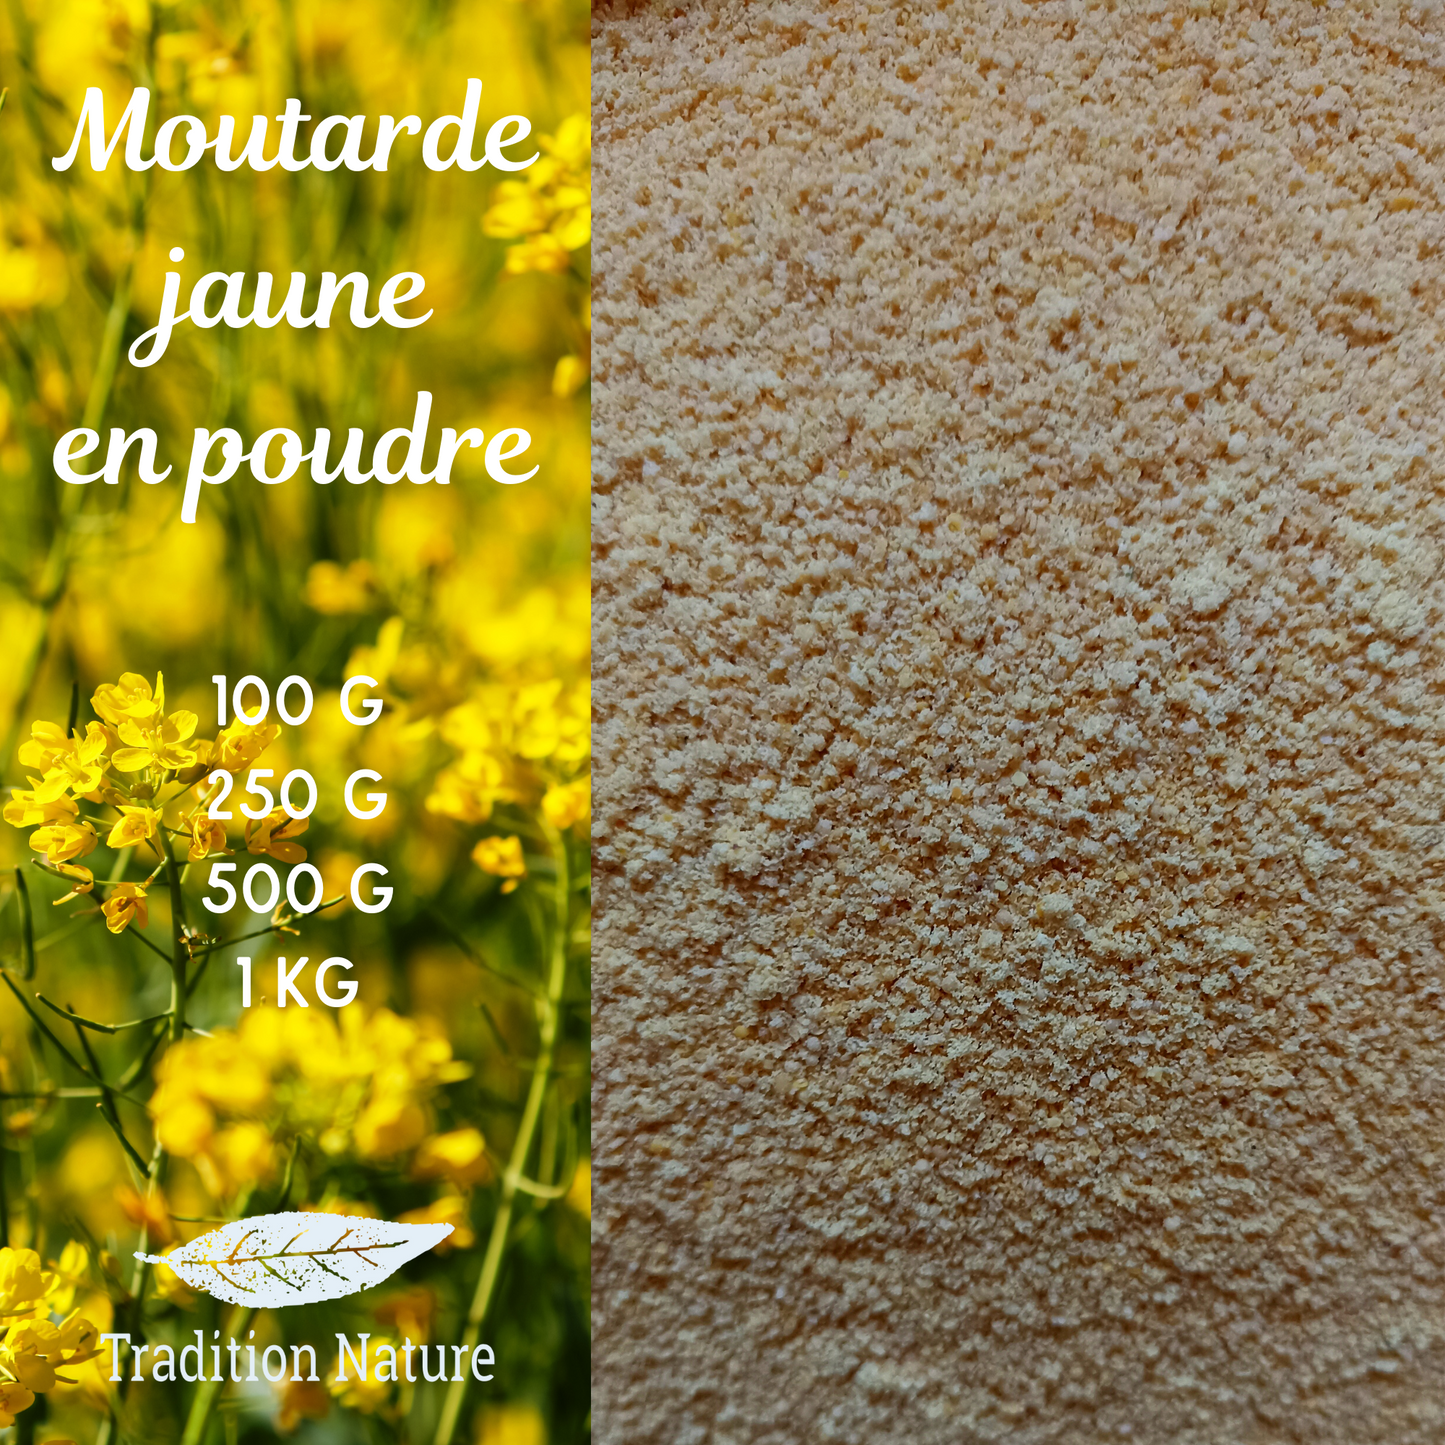 MOUTARDE JAUNE BIOLOGIQUE EN POUDRE - GŪSTAE - Graines de moutarde